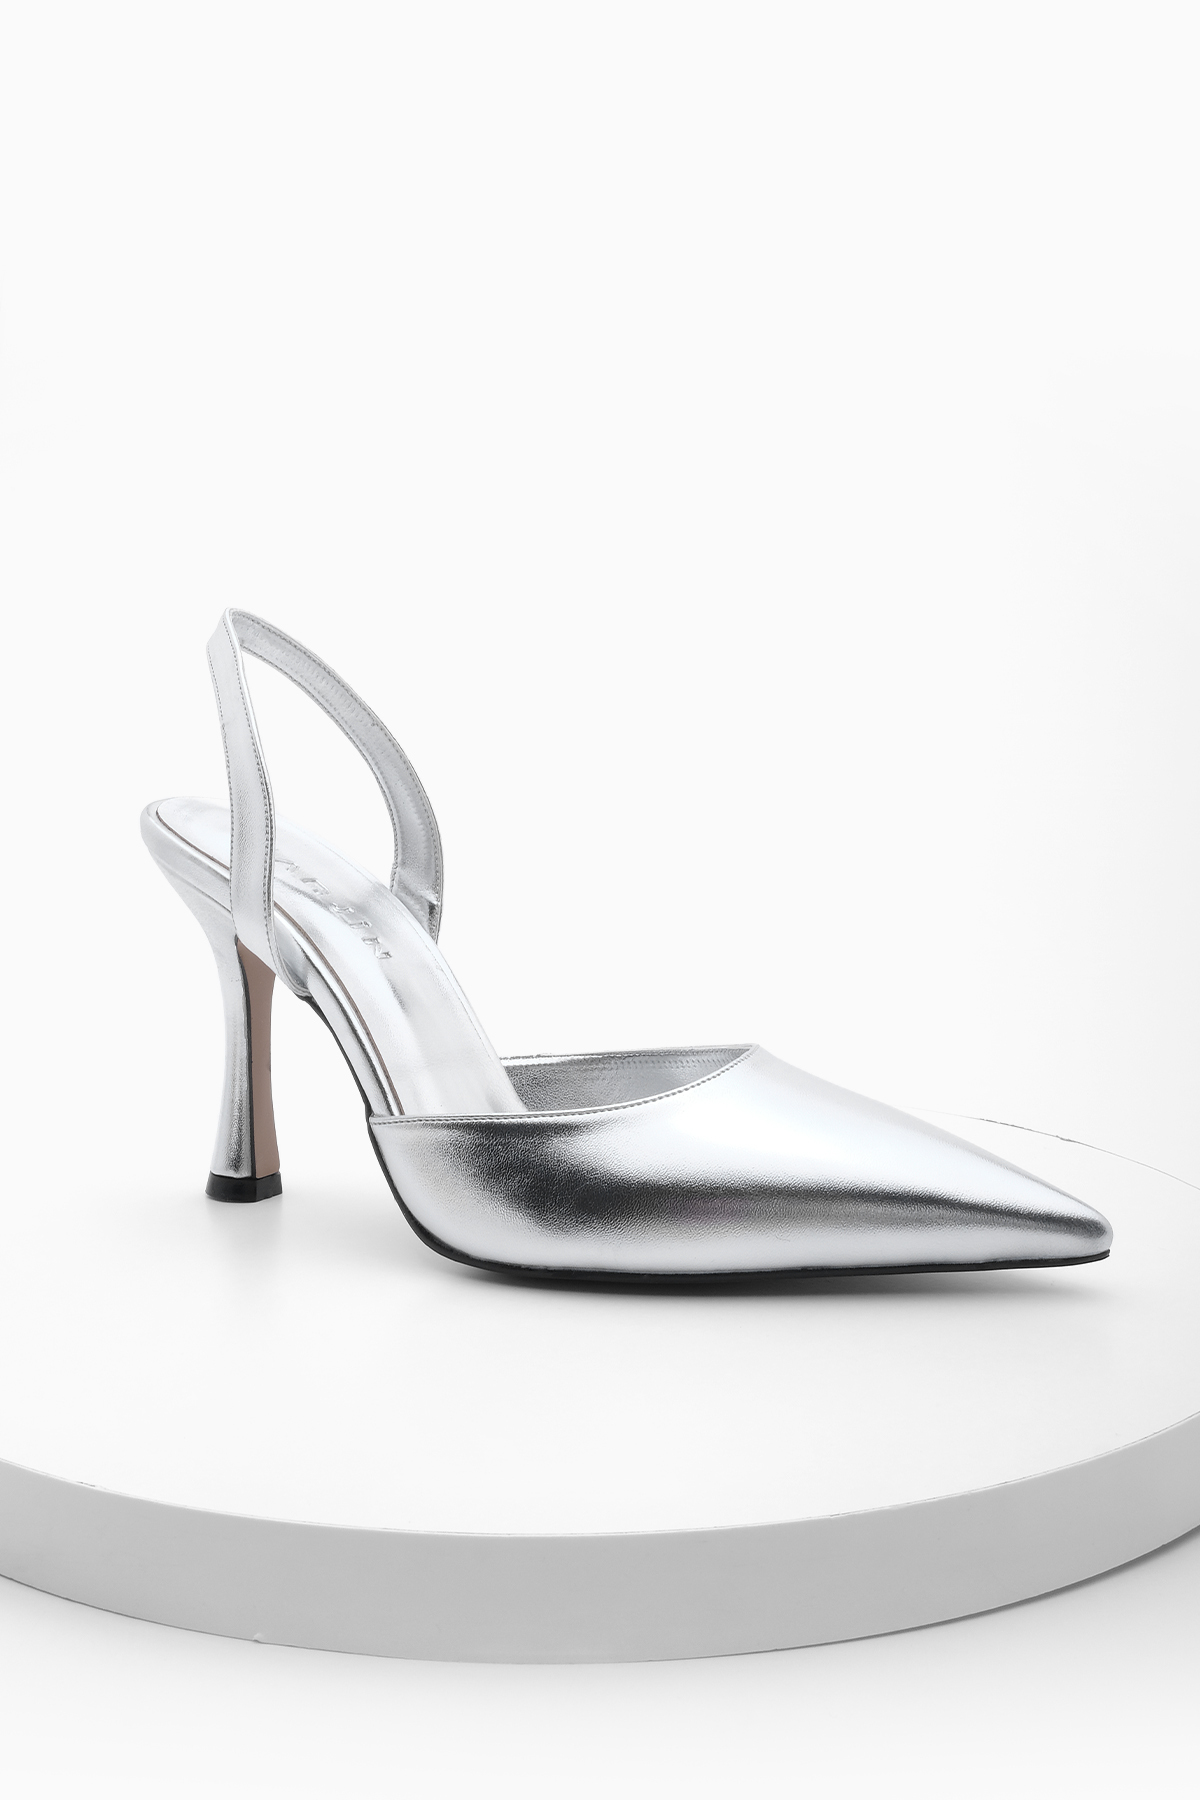 Marjin Women's Stiletto Pointed Toe Open Back Evening Dress Heels Nisay Silver